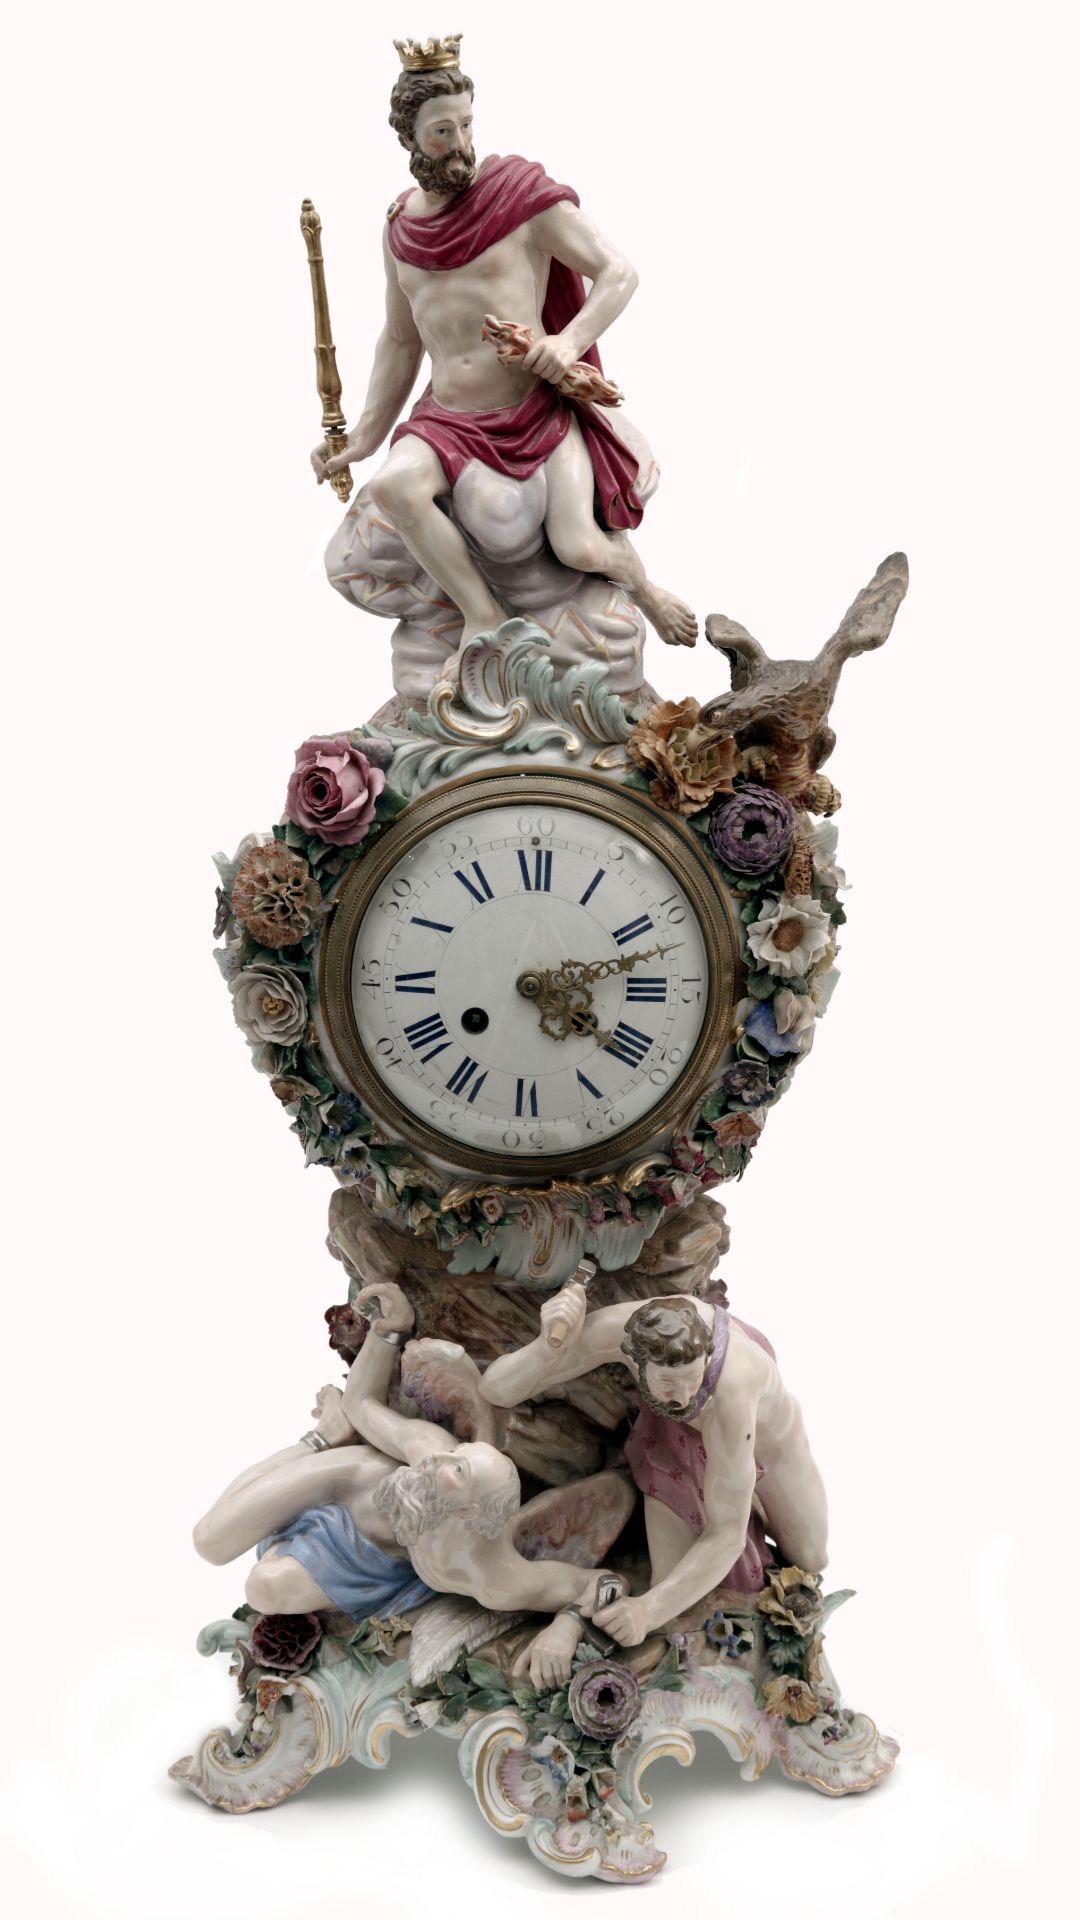 A Prometheus Porcelain Mantle Clock by Meissen